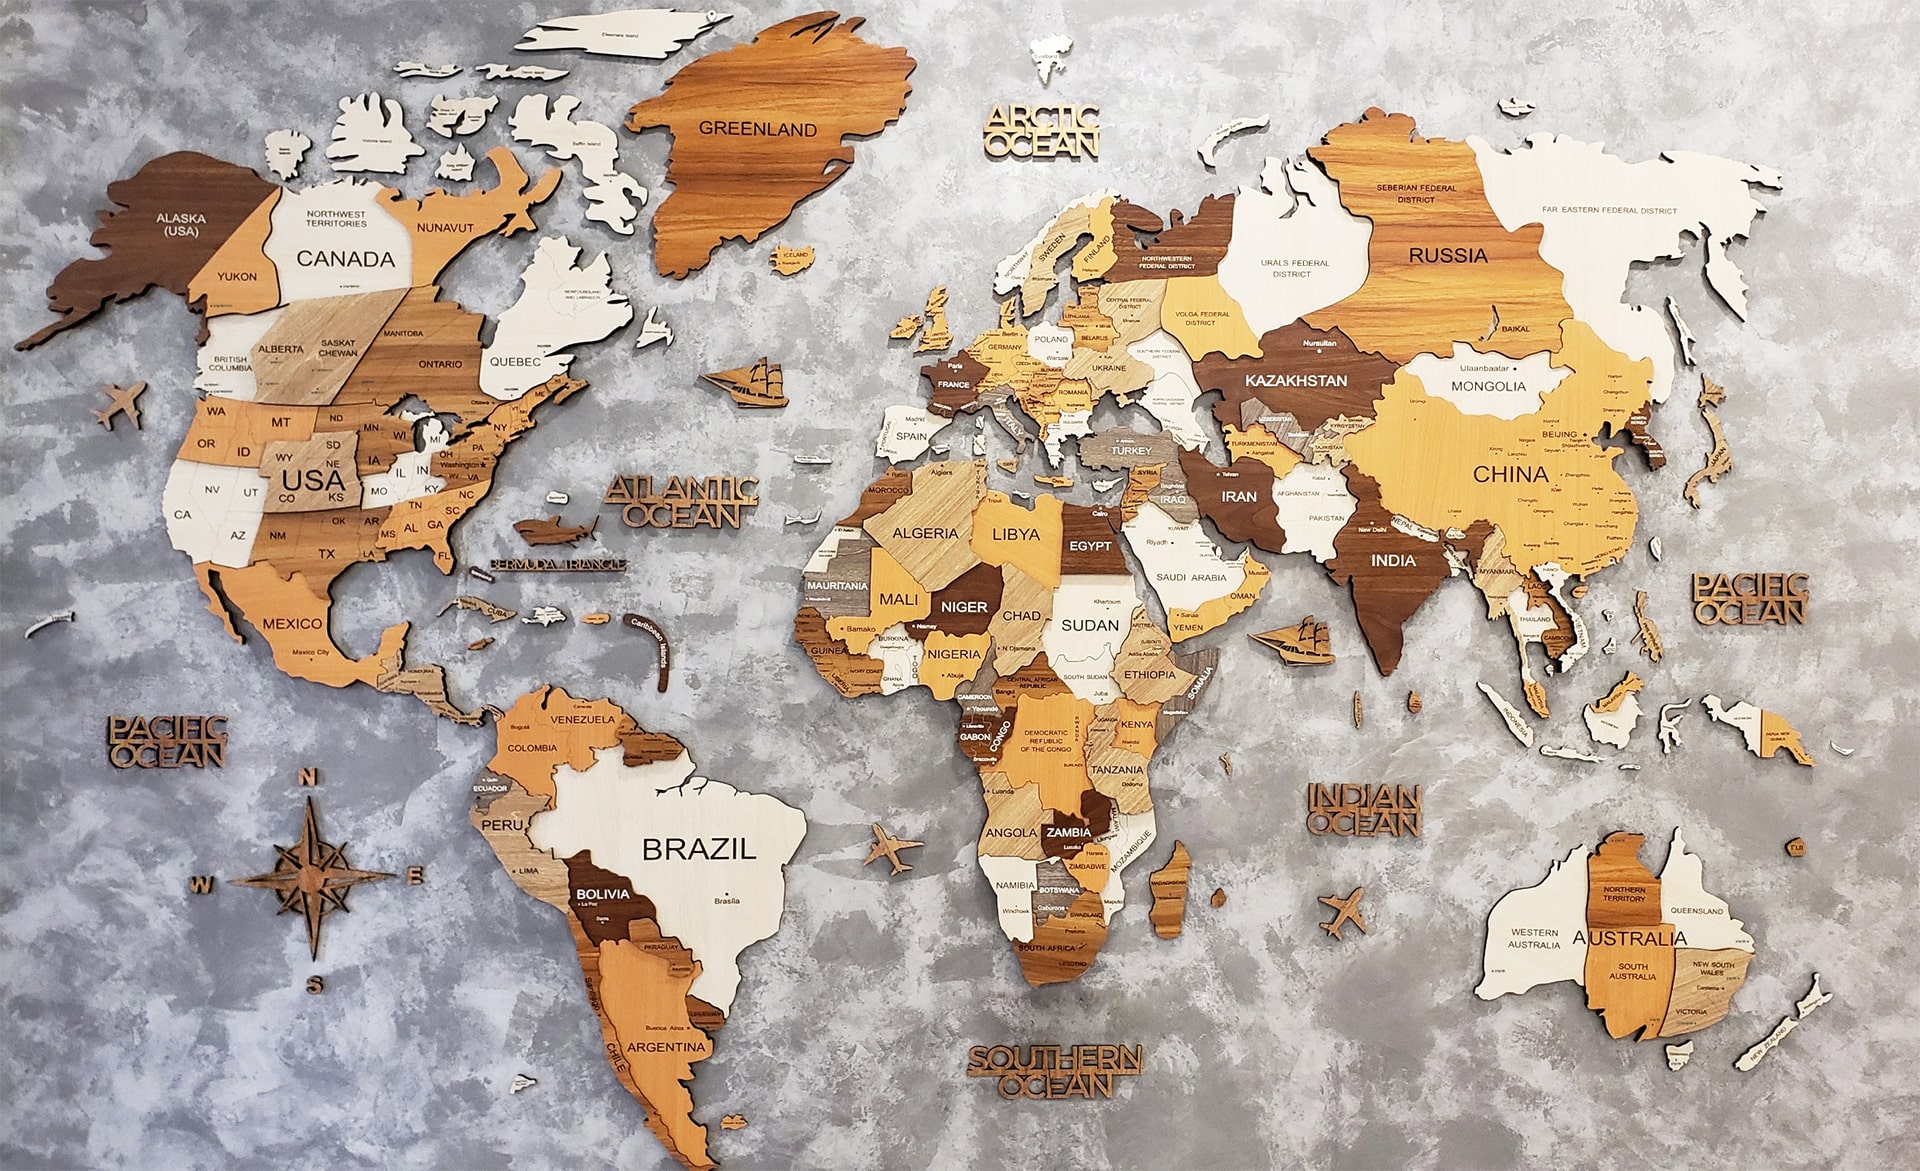 Bản đồ gỗ thế giới 3D màu sắc đa dạng 2024: Với những màu sắc đa dạng trên bản đồ gỗ 3D thế giới năm 2024, người dùng sẽ có trải nghiệm khám phá vị trí geographically, mang tính giải trí cao. Bản đồ gỗ thế giới sẽ giúp cho người dùng tạo ra một không gian thú vị và đầy màu sắc trong phòng khách hoặc không gian làm việc của mình.